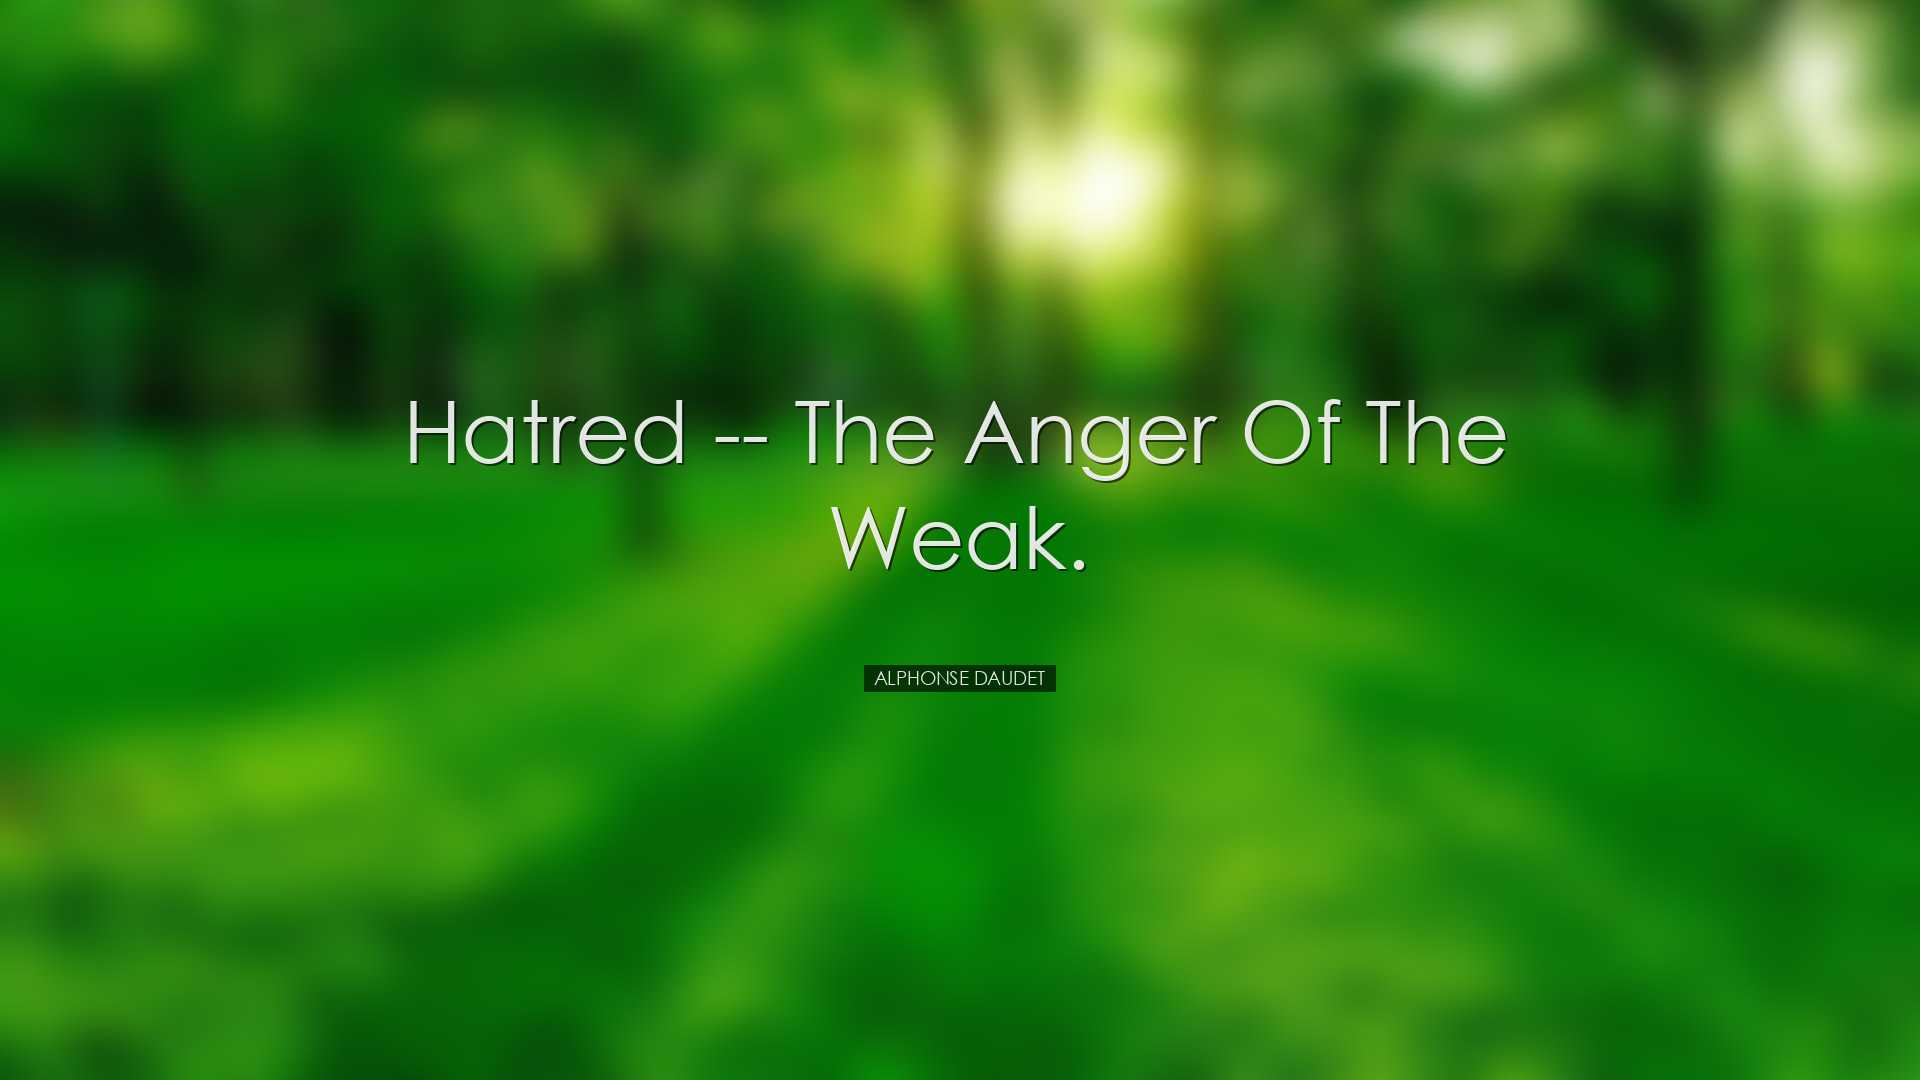 Hatred -- The anger of the weak. - Alphonse Daudet